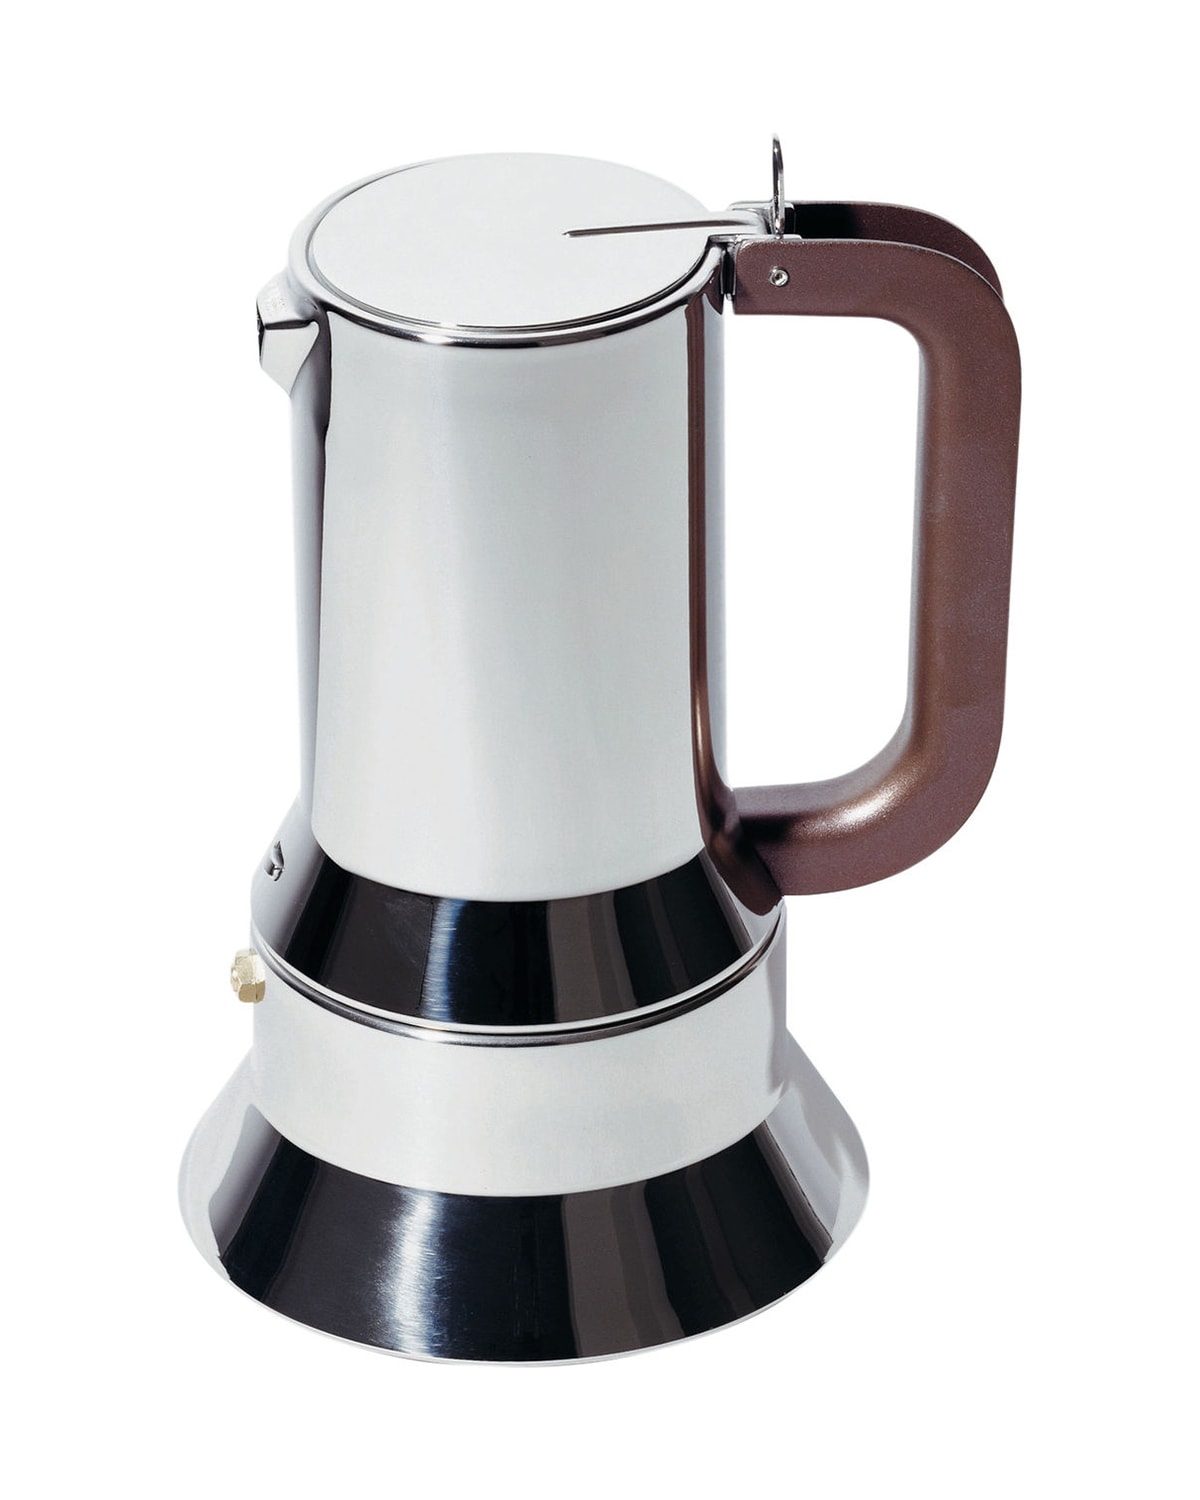 Alessi 10-cup Espresso Coffee Maker In Gray